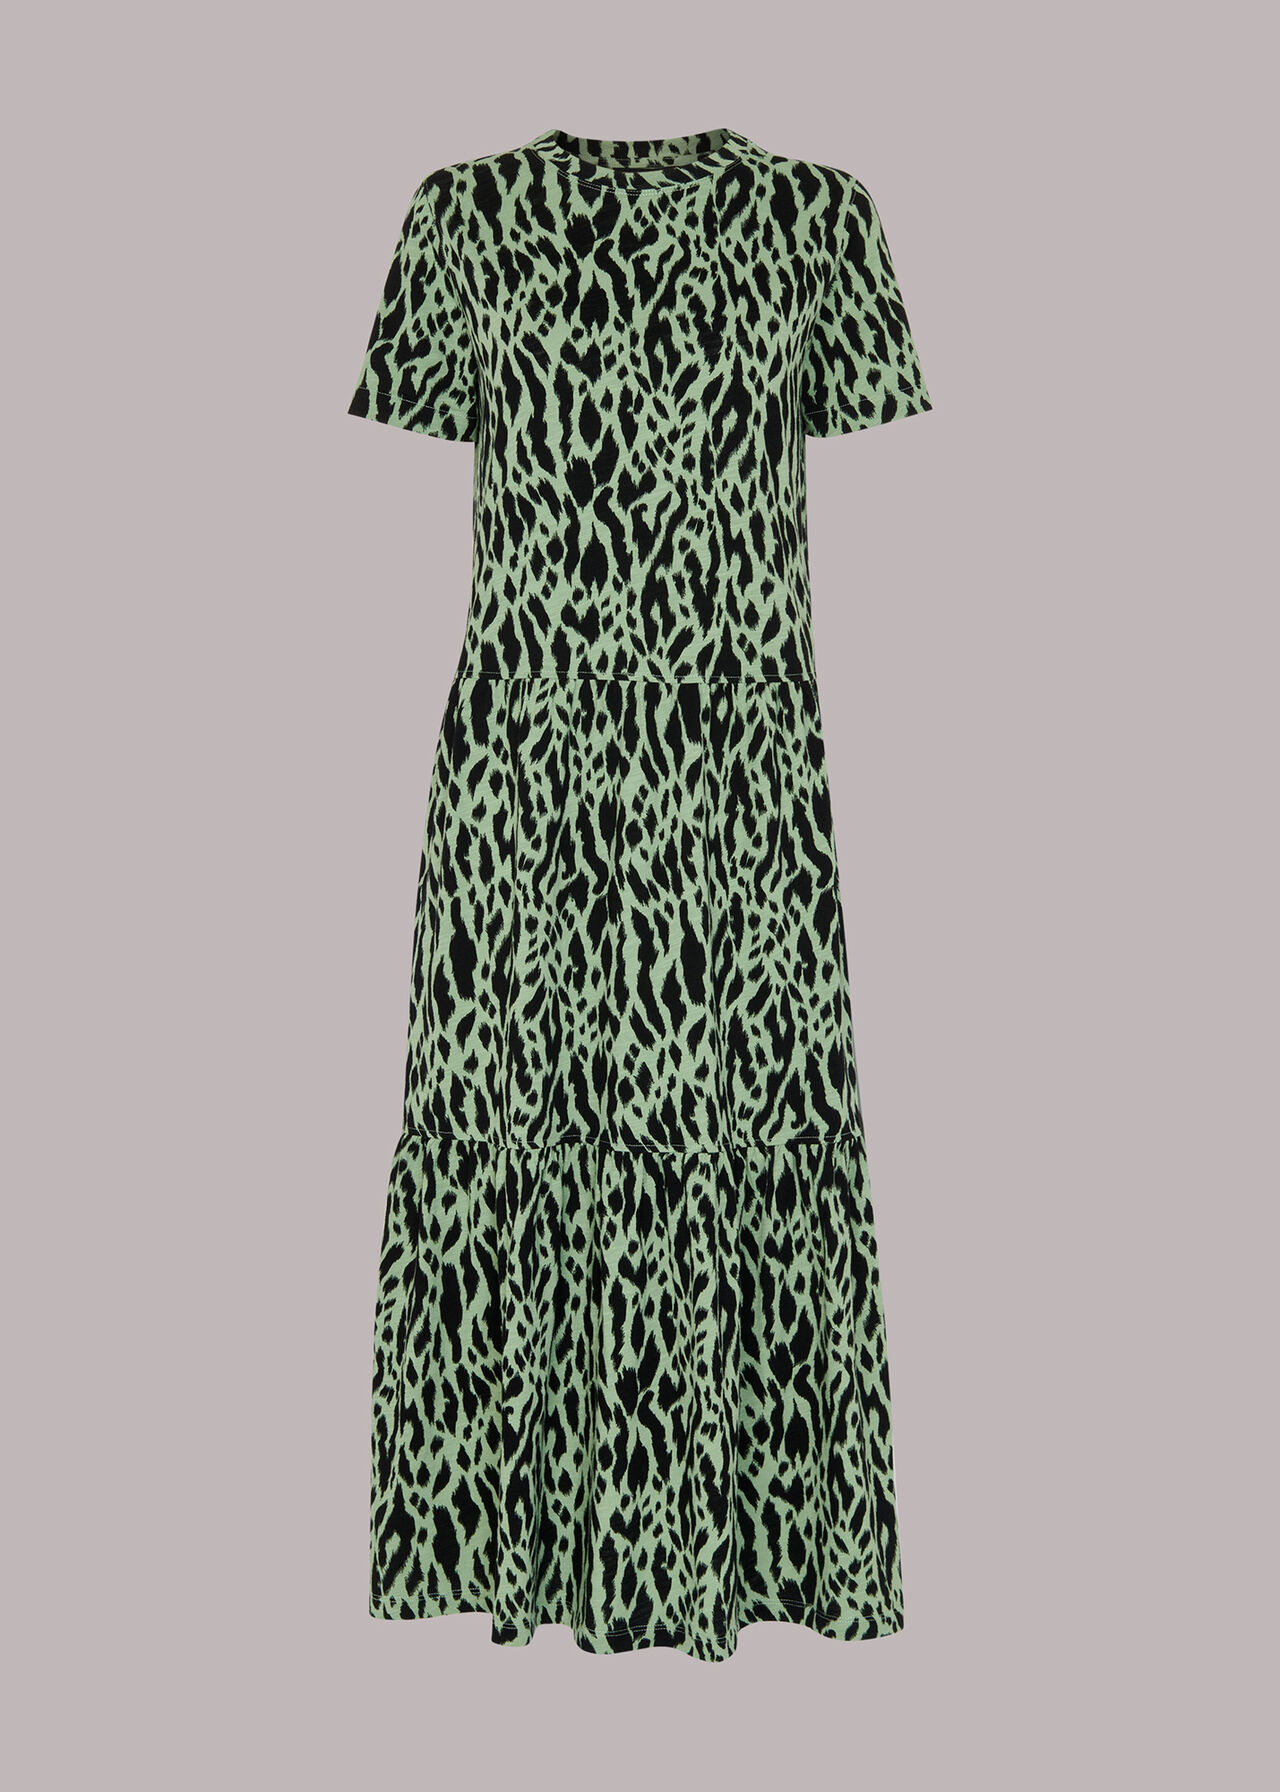 Zebra Tiered Jersey Dress